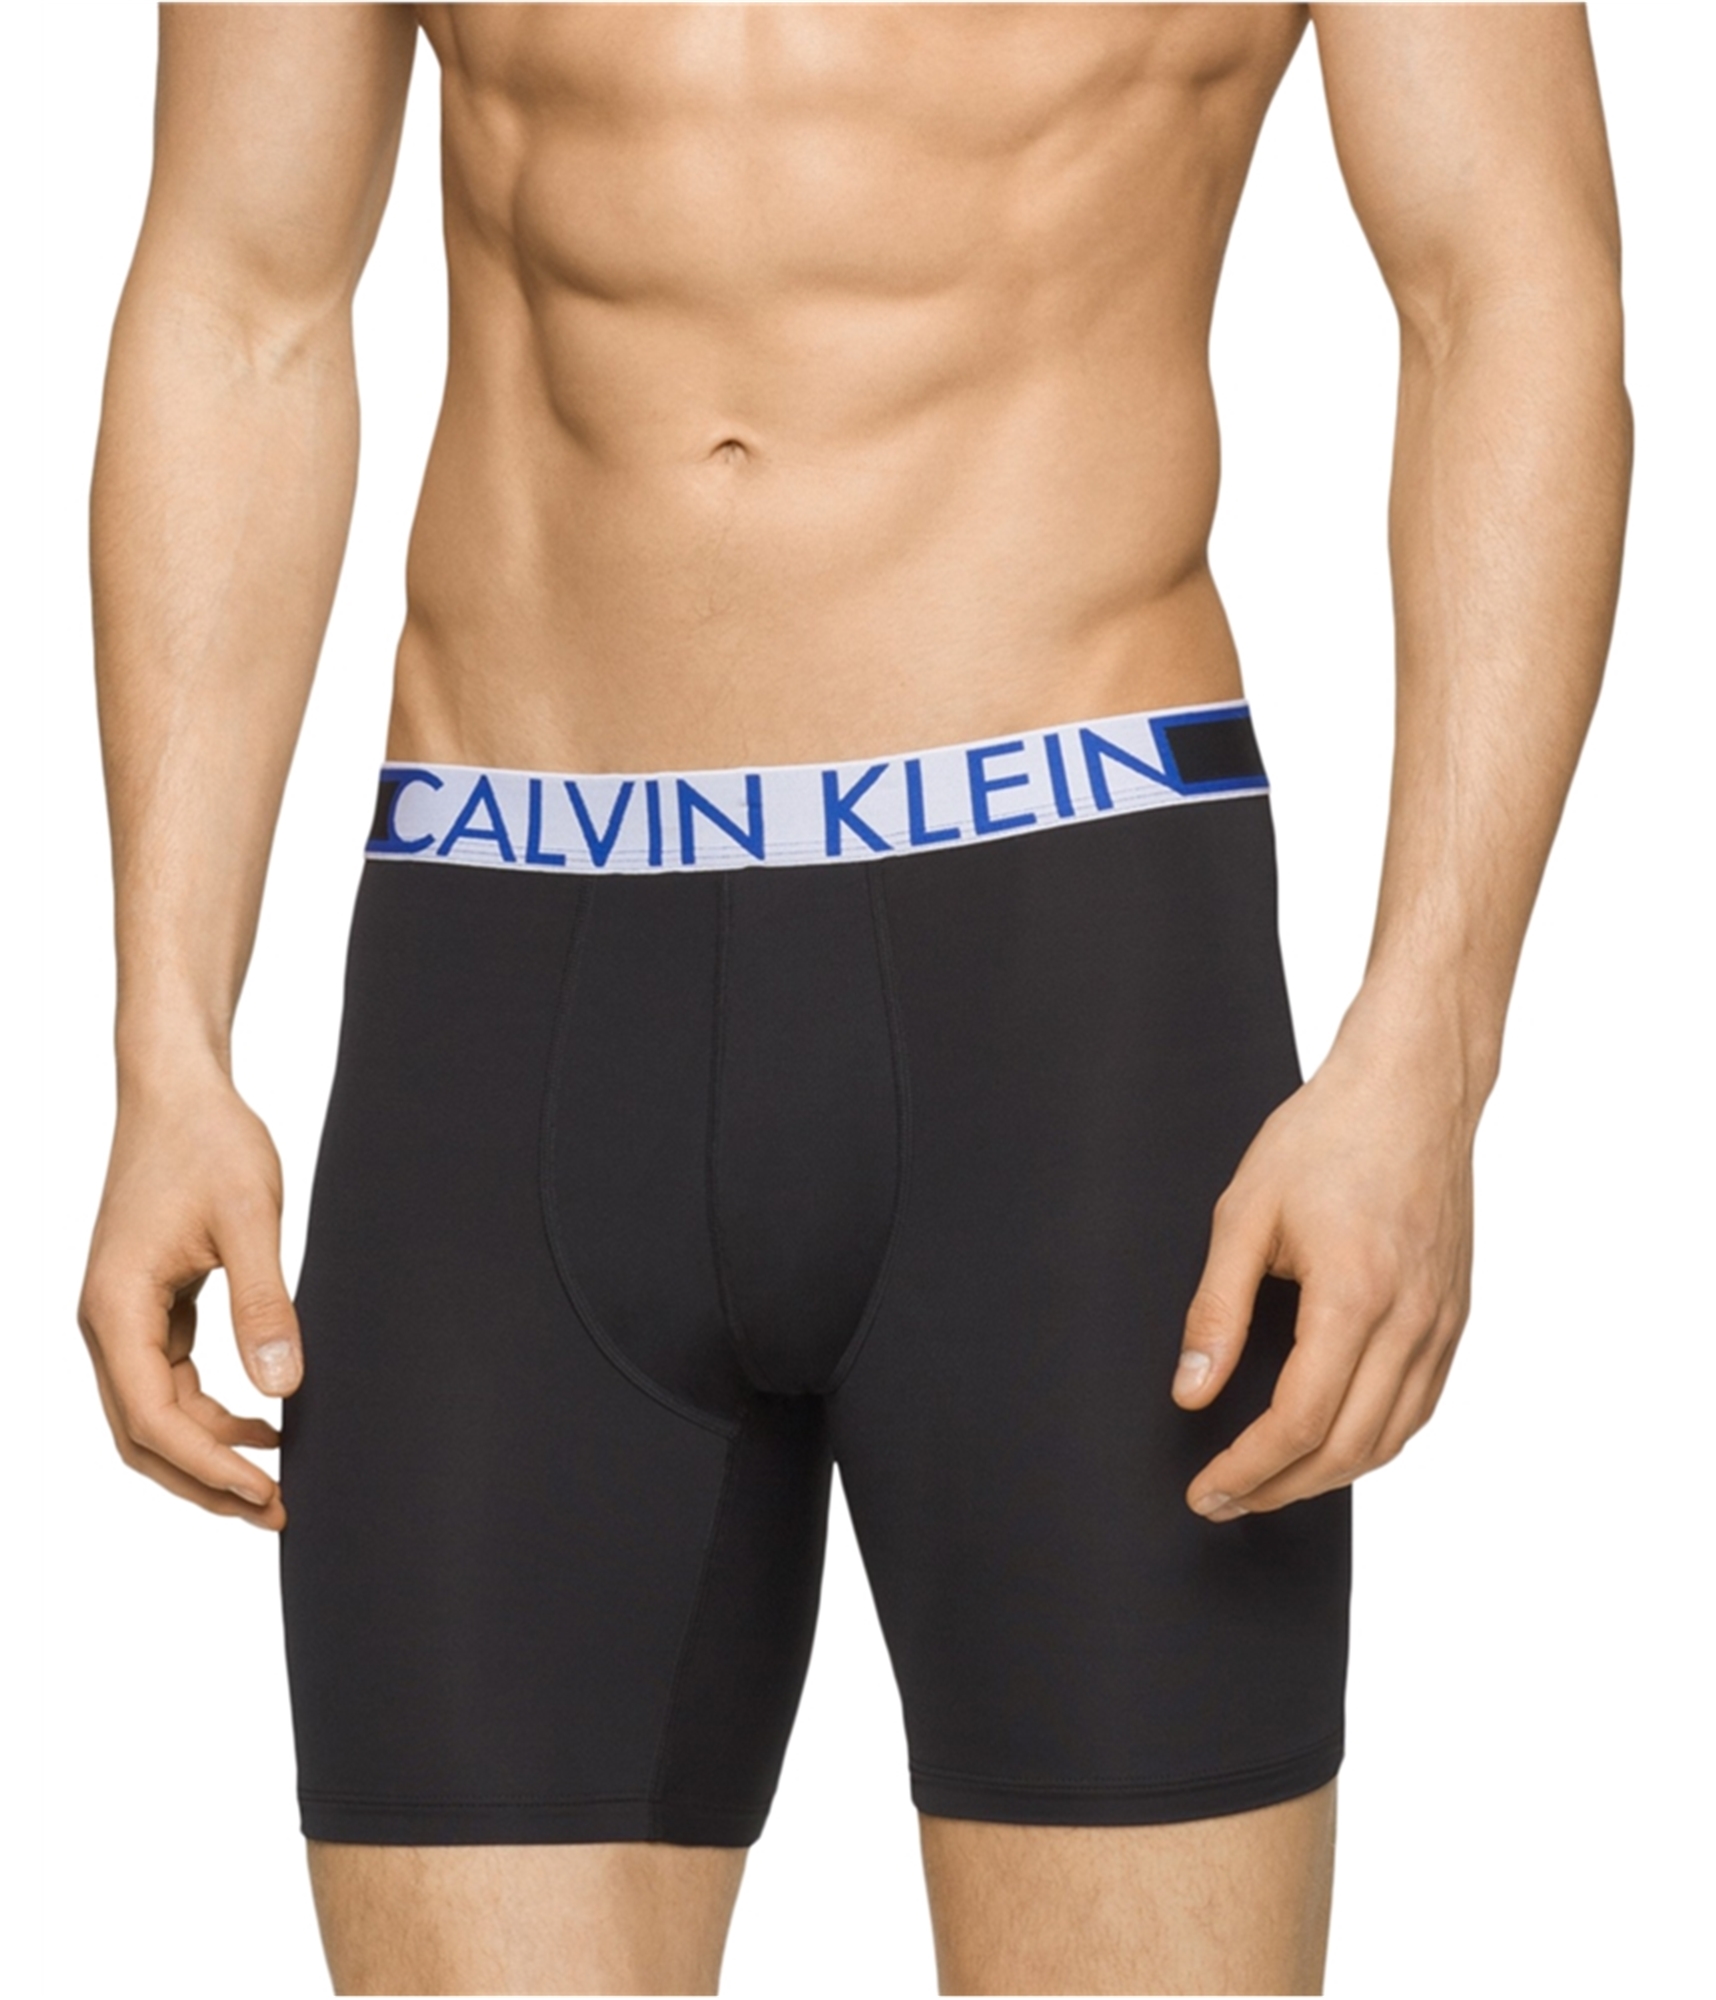 Introducir 34+ imagen calvin klein performance underwear